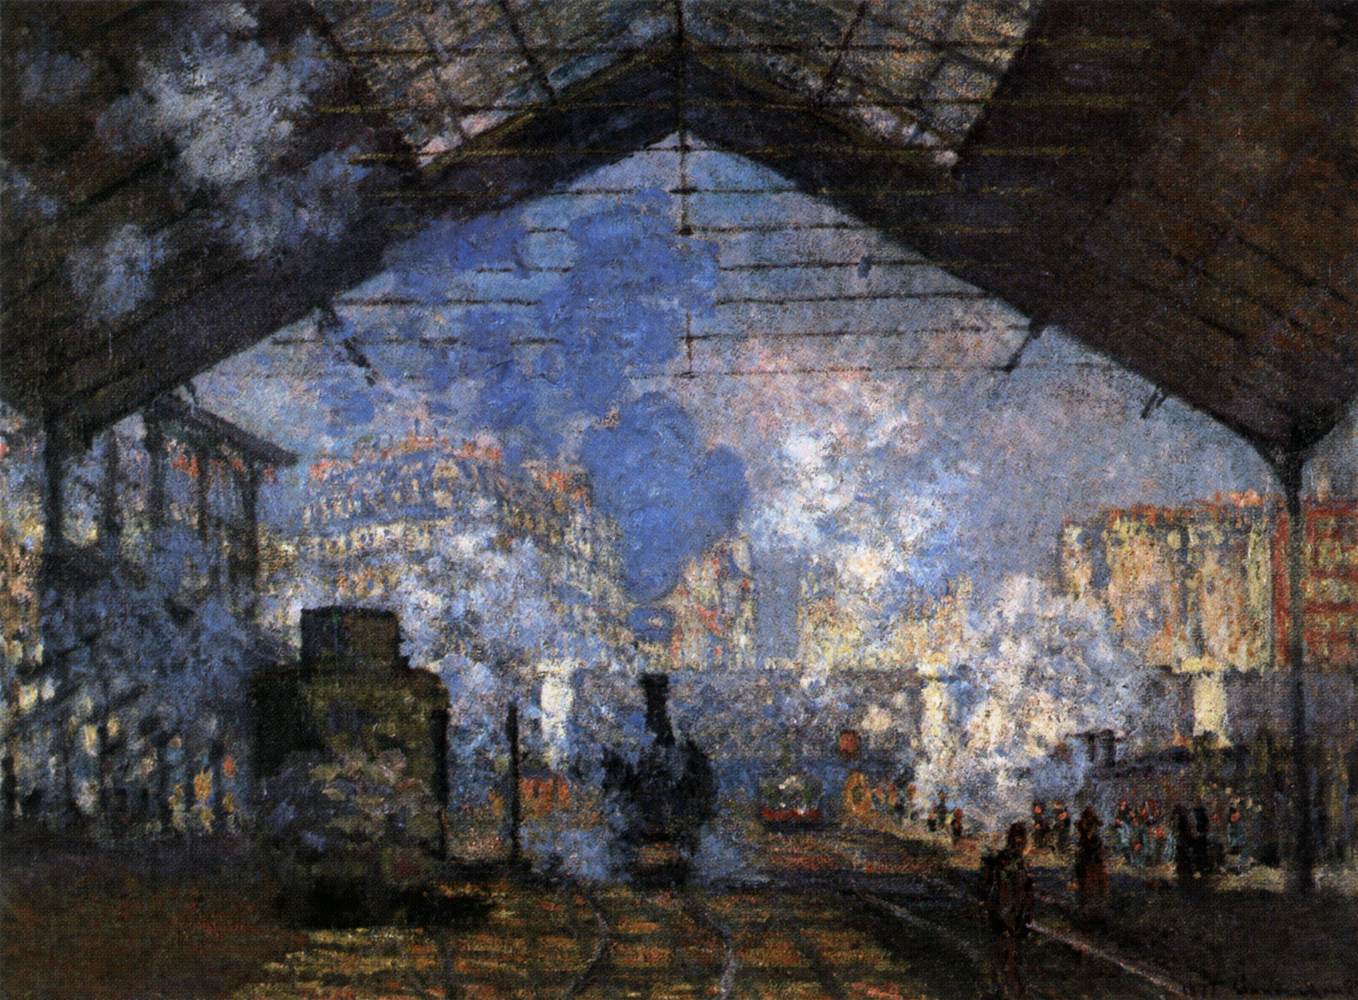 Dworzec Saint-Lazare  (Gare Saint-Lazare) by Claude Monet - 1877 - 76 x 104 cm 